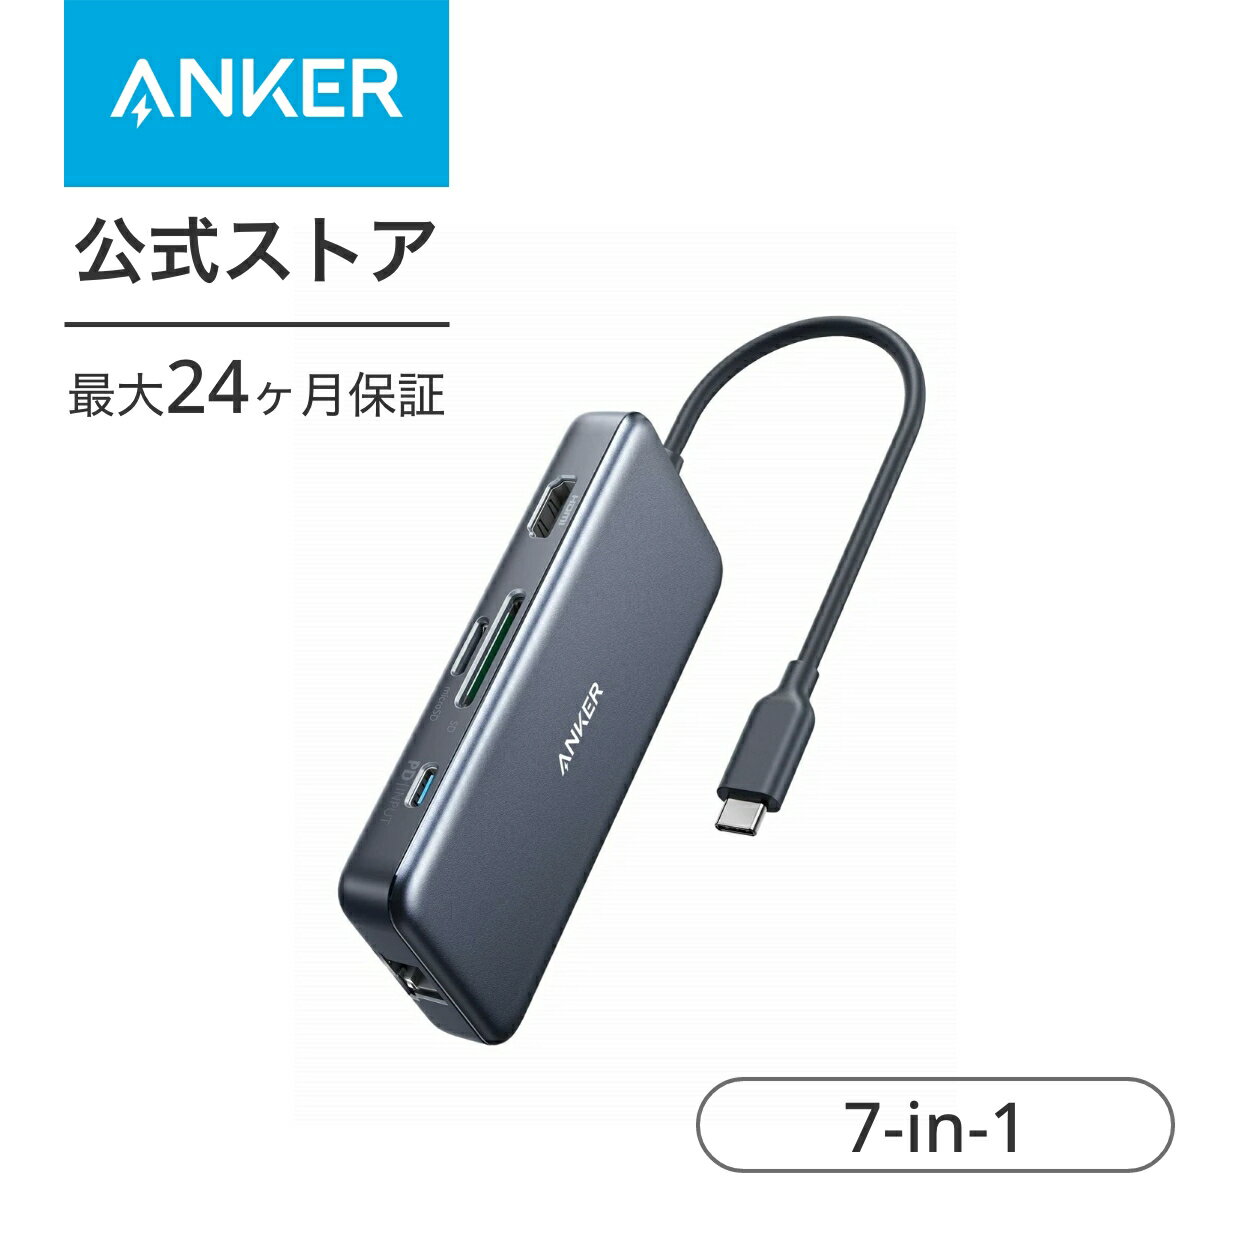 【1 000円OFF 6/11まで】Anker PowerExpand+ 7-in-1 USB-C PD イーサネット ハブ4K対応HDMI出力ポート 60W出力 Power Delivery 対応USB-Cポート 1Gbps イーサネット 2つの USB-A ポート microS…